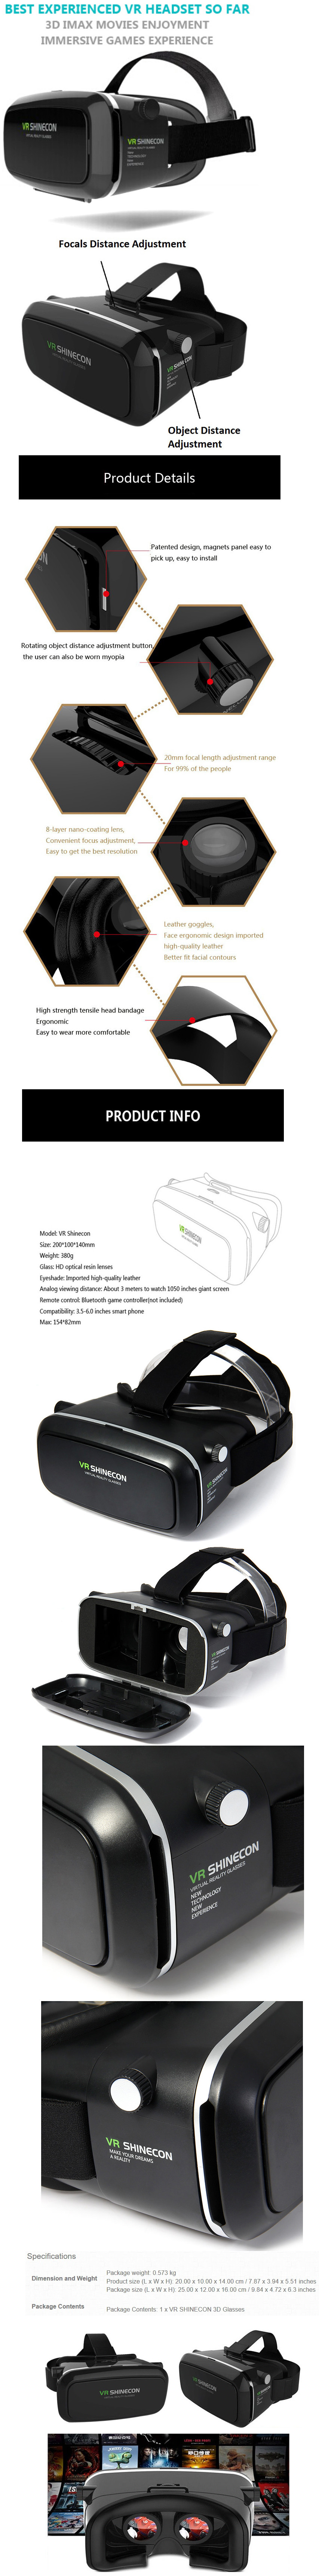 VR_visore_per_Realt_Virtuale_3D_360_-_Caratteristiche_Tecniche_e_Features_-_6